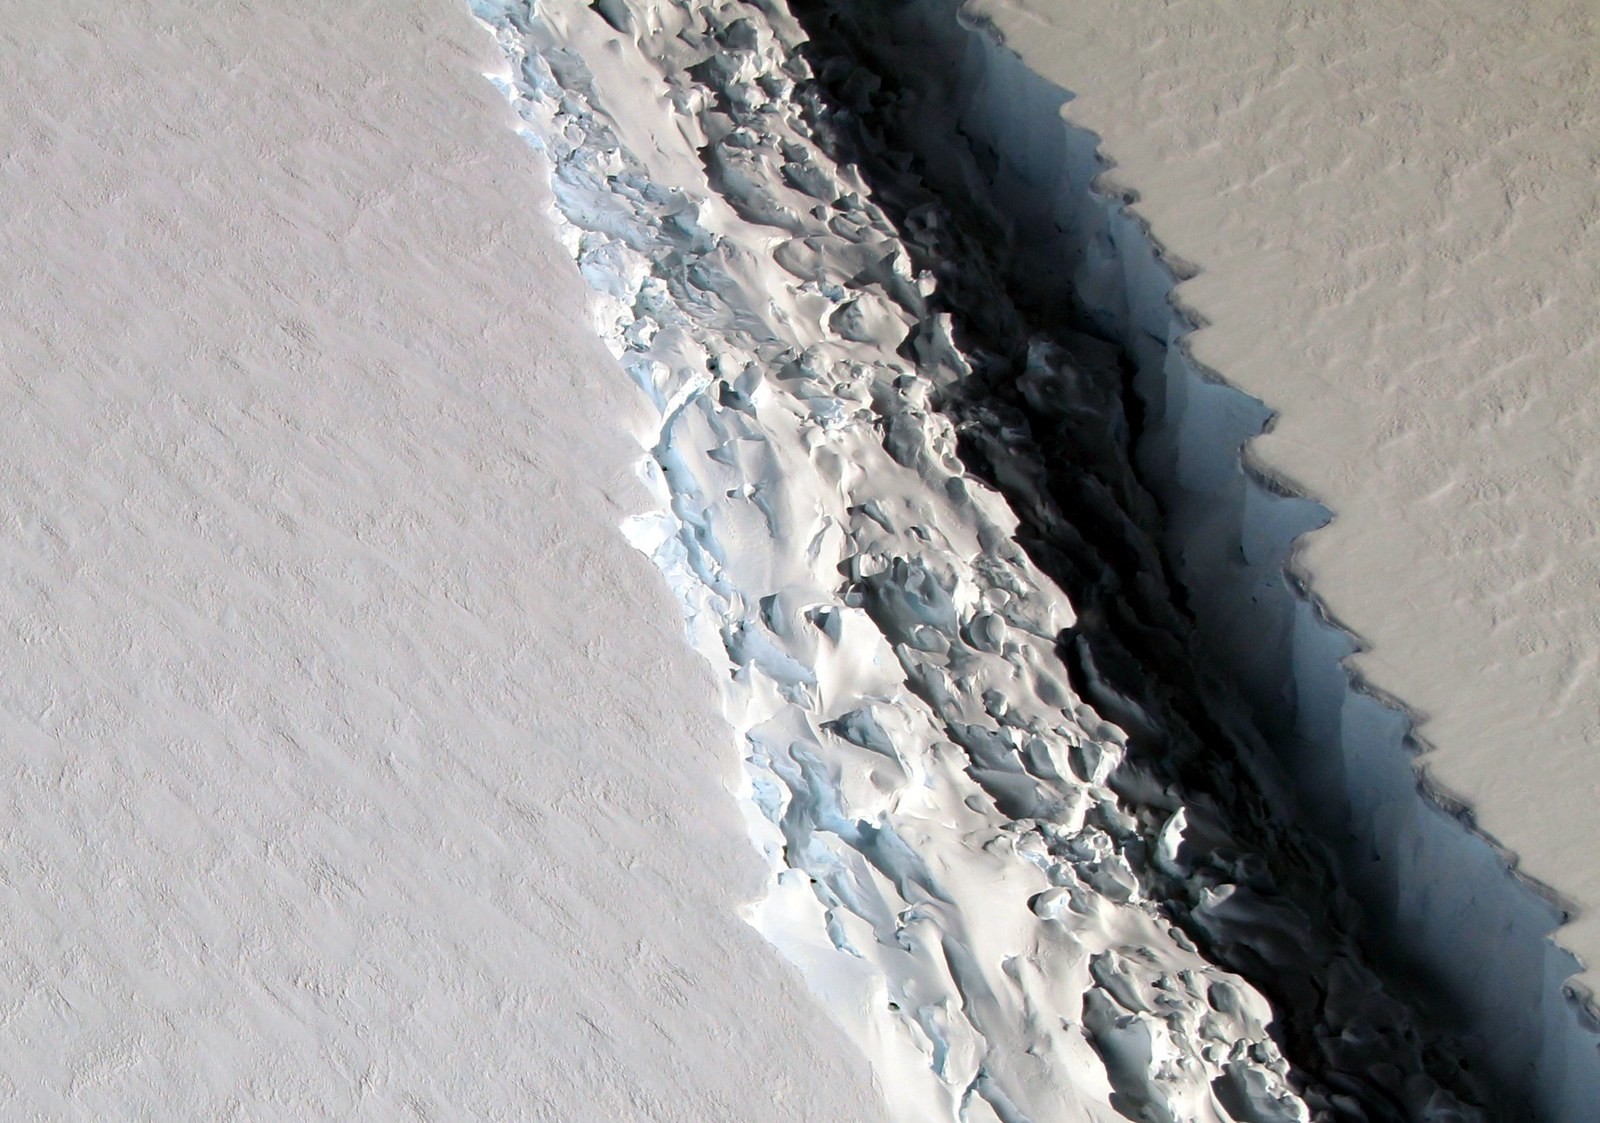 2. Трещина в шельфовом леднике Ларсена в Антарктиде, 10 ноября (NASA/John Sonntag) наука, научные исследования, научные открытия, фотографии